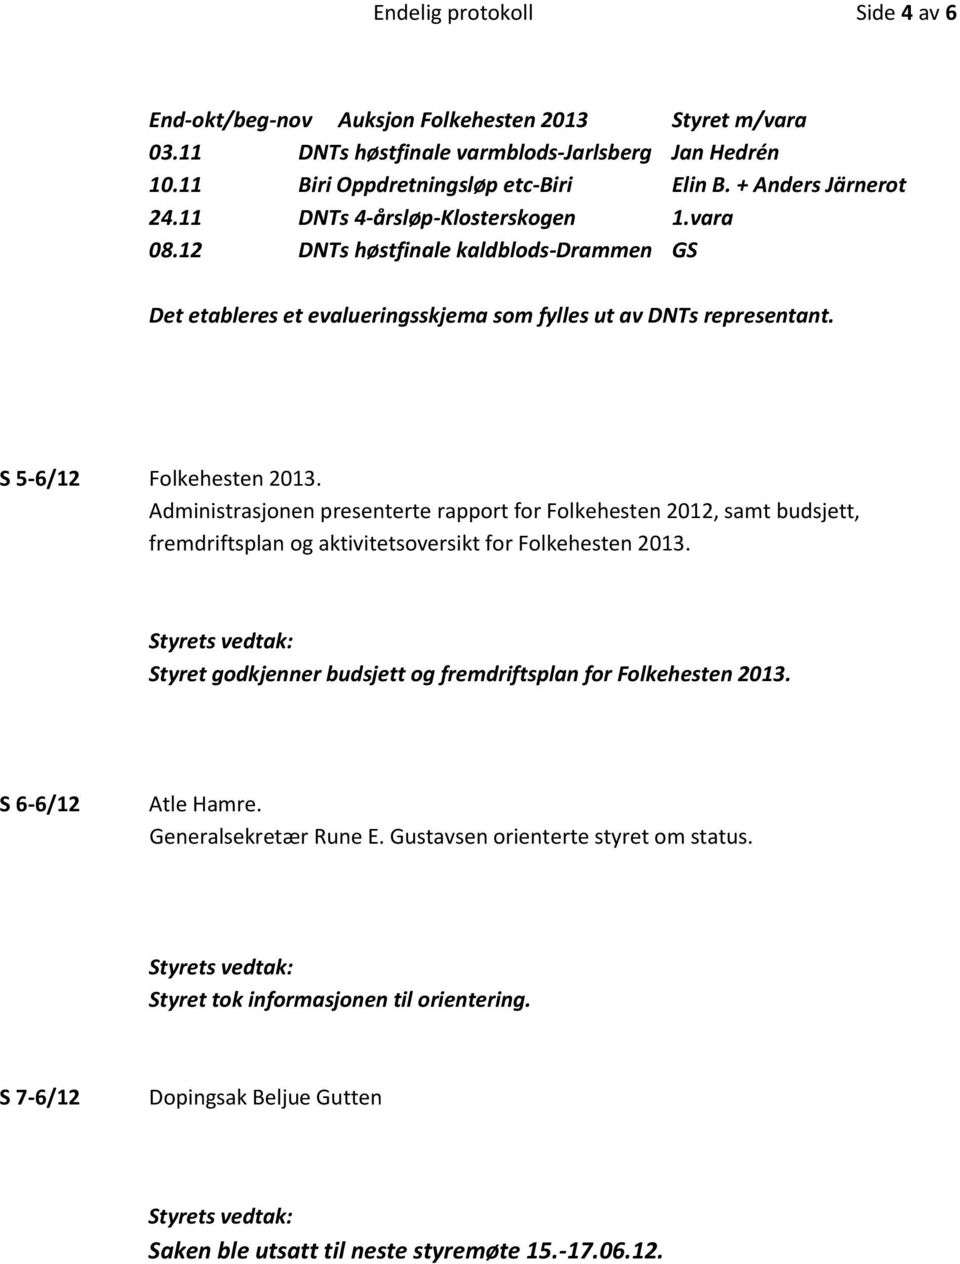 S 5-6/12 Folkehesten 2013. Administrasjonen presenterte rapport for Folkehesten 2012, samt budsjett, fremdriftsplan og aktivitetsoversikt for Folkehesten 2013.